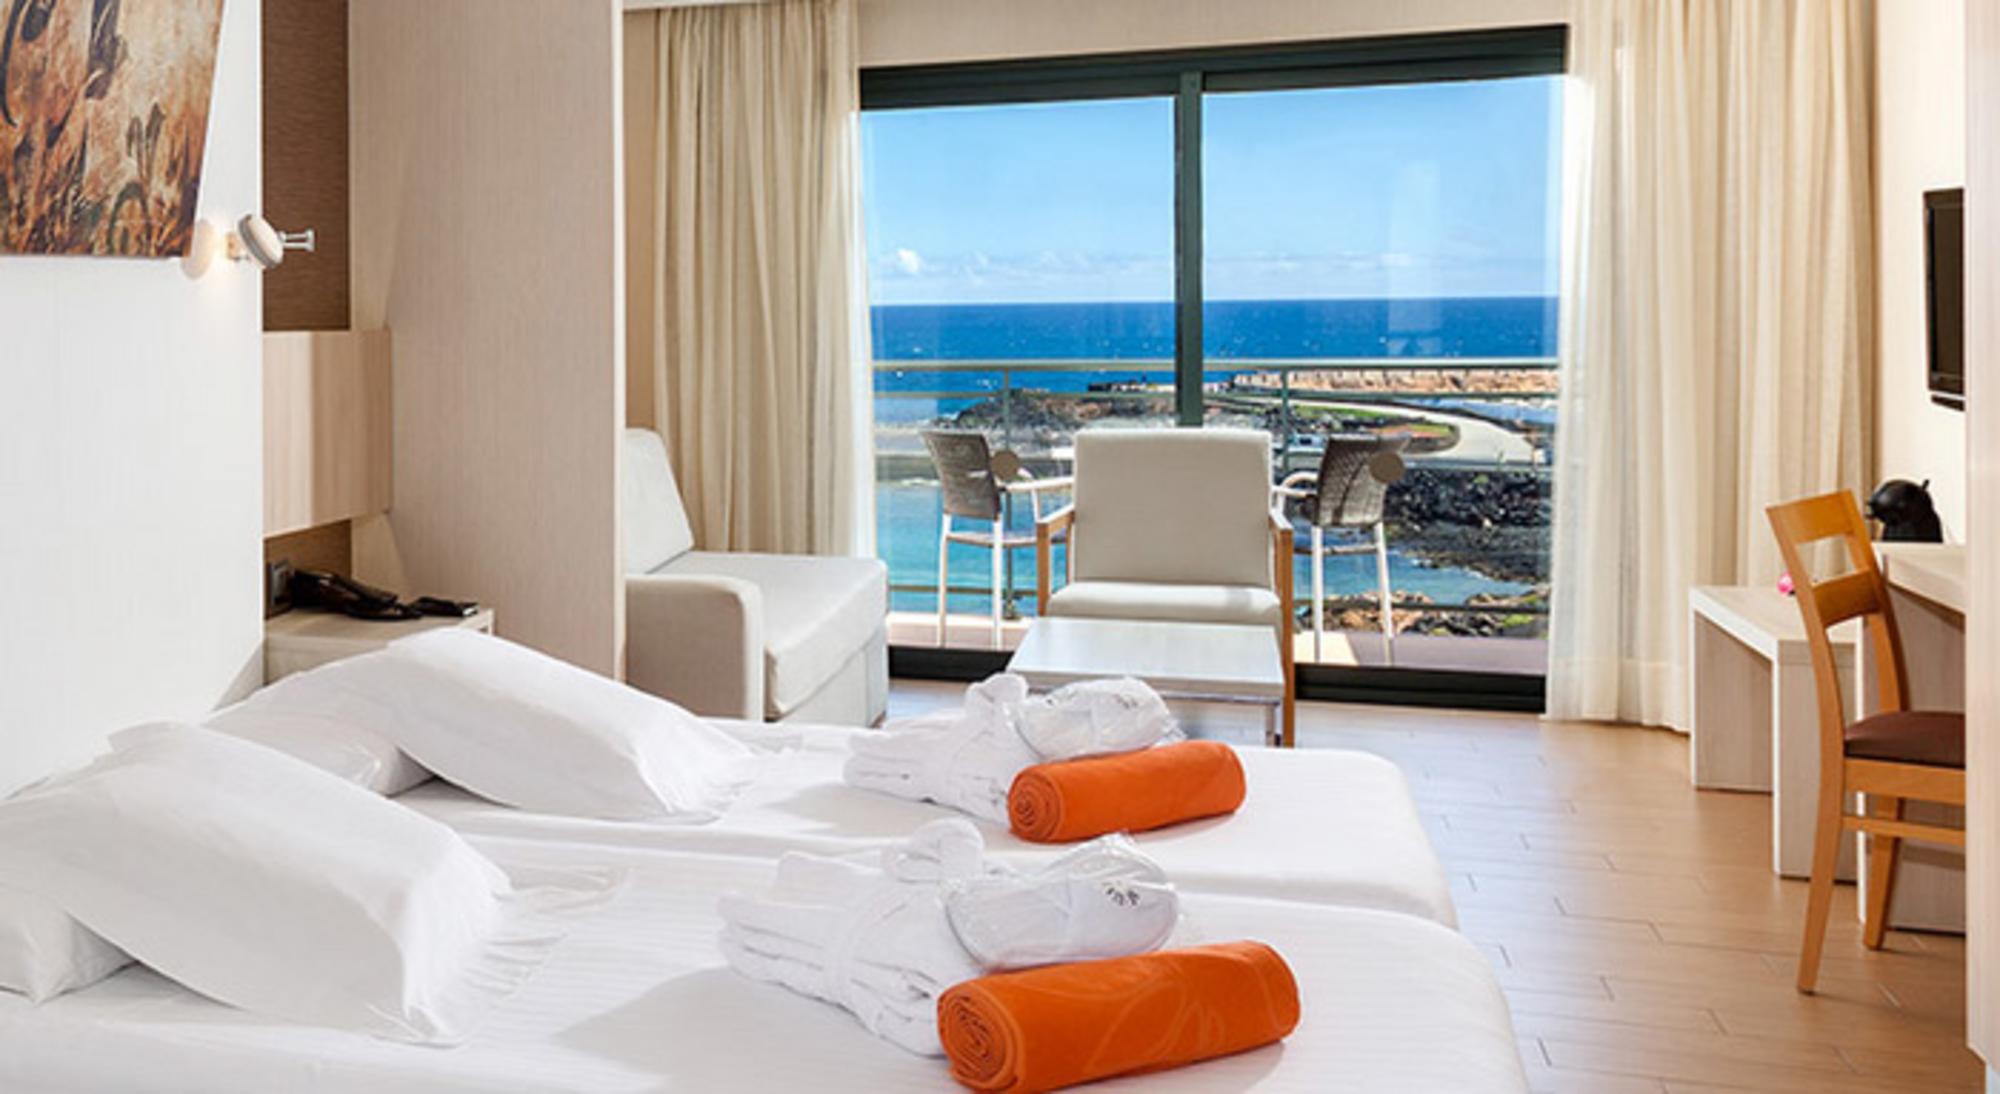 Detalle de una habitación del hotel Be Live en Lanzarote